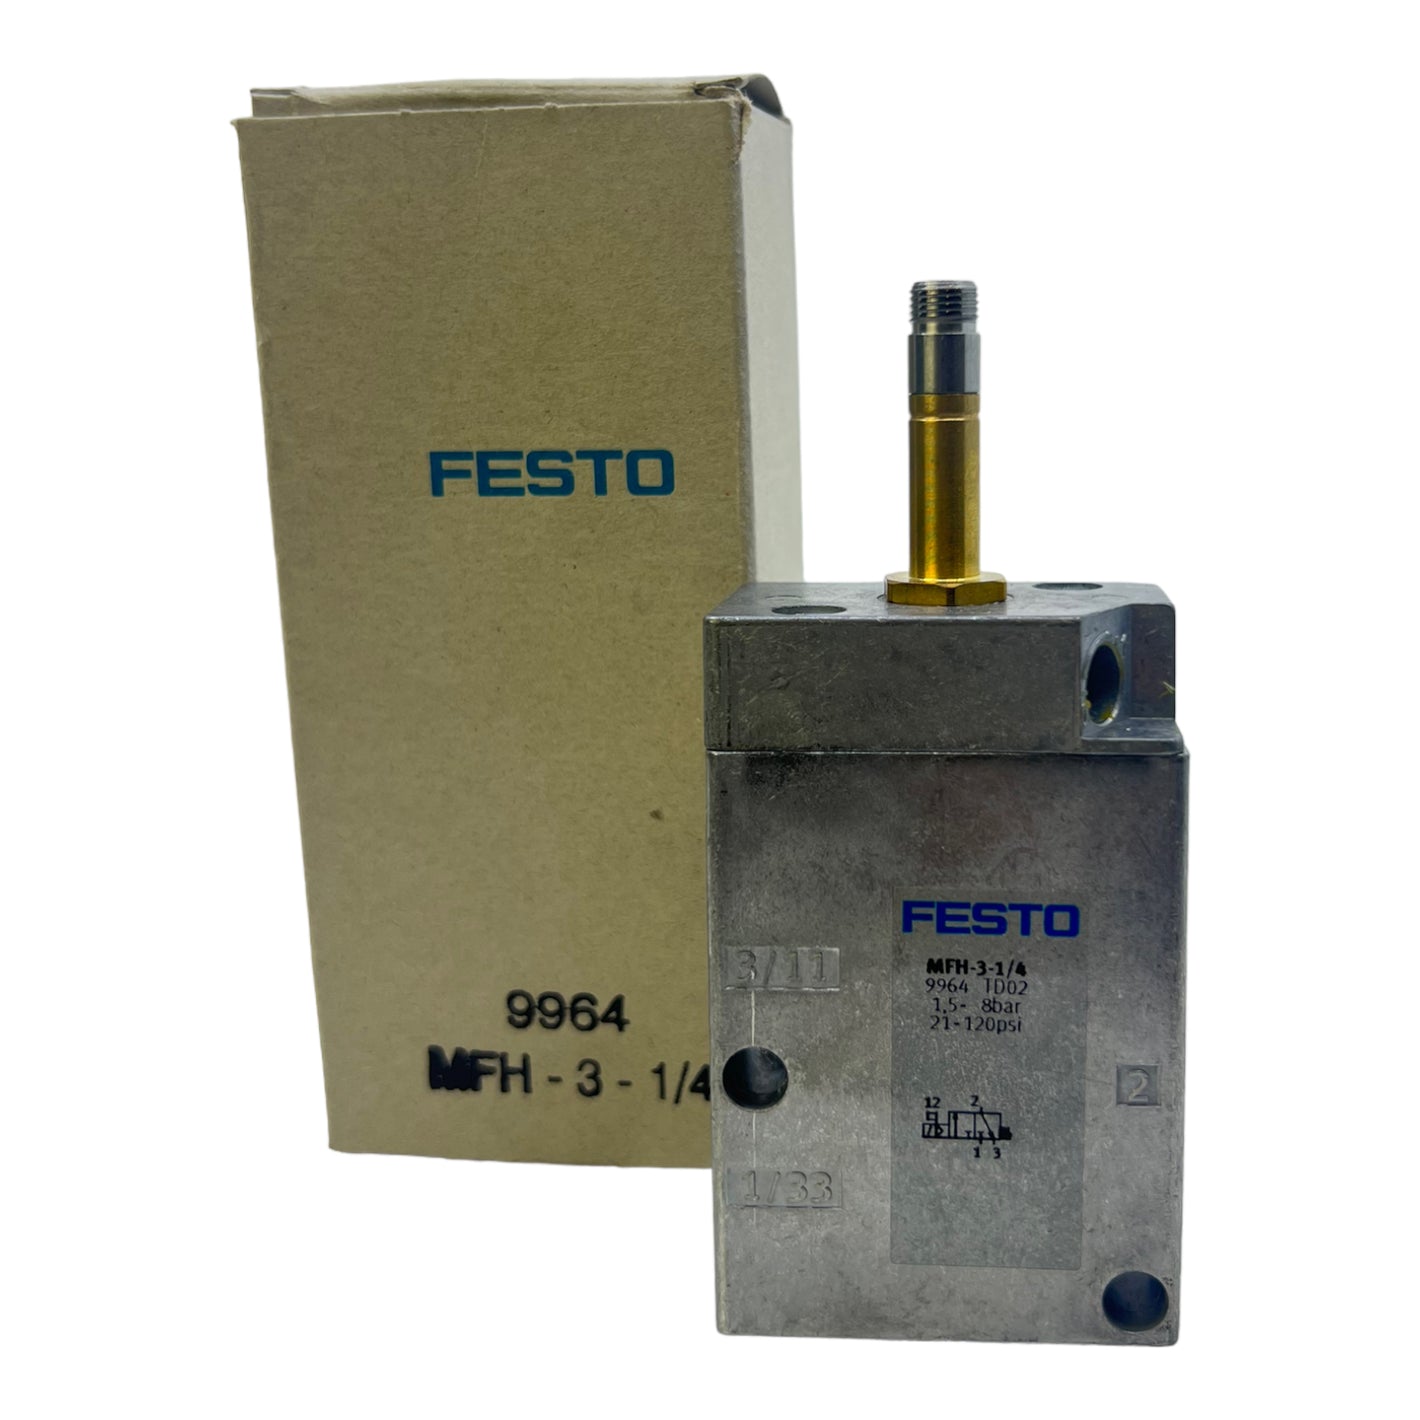 Festo MFH-3-1/4 Magnetventil 9964 Pneumatik elektrisch 1,5 bis 8bar 21- 120psi